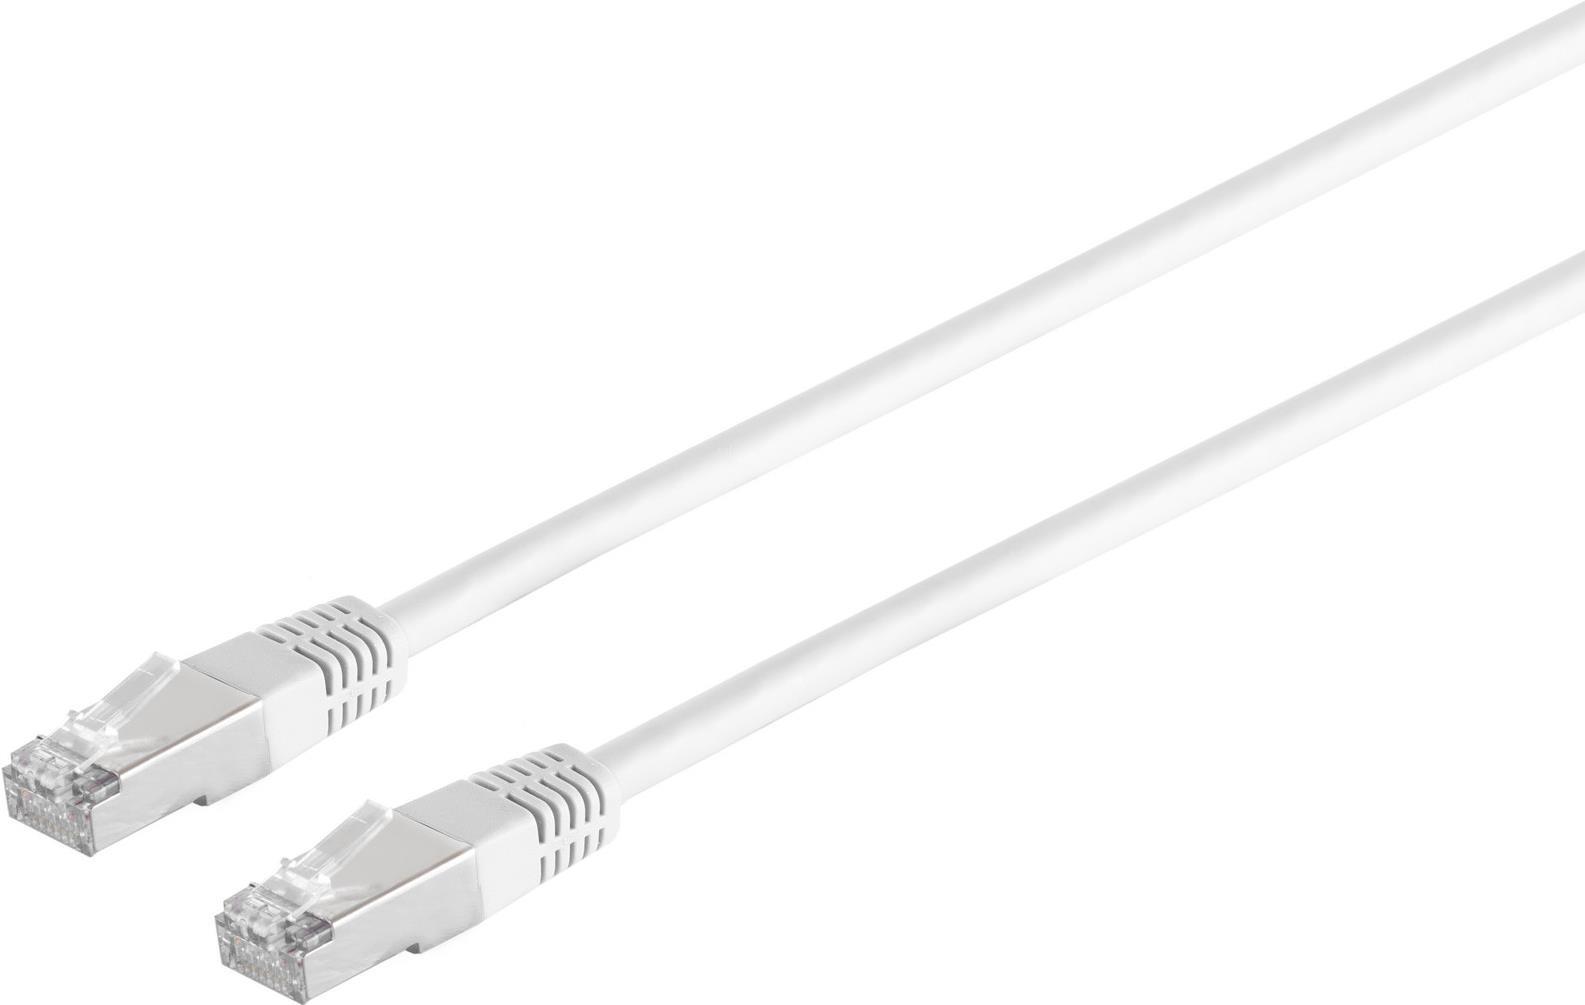 S/CONN maximum connectivity Netzwerkkabel-Patchkabel, cat. 5e, SF/UTP, weiß, 2,0m (75212-W)